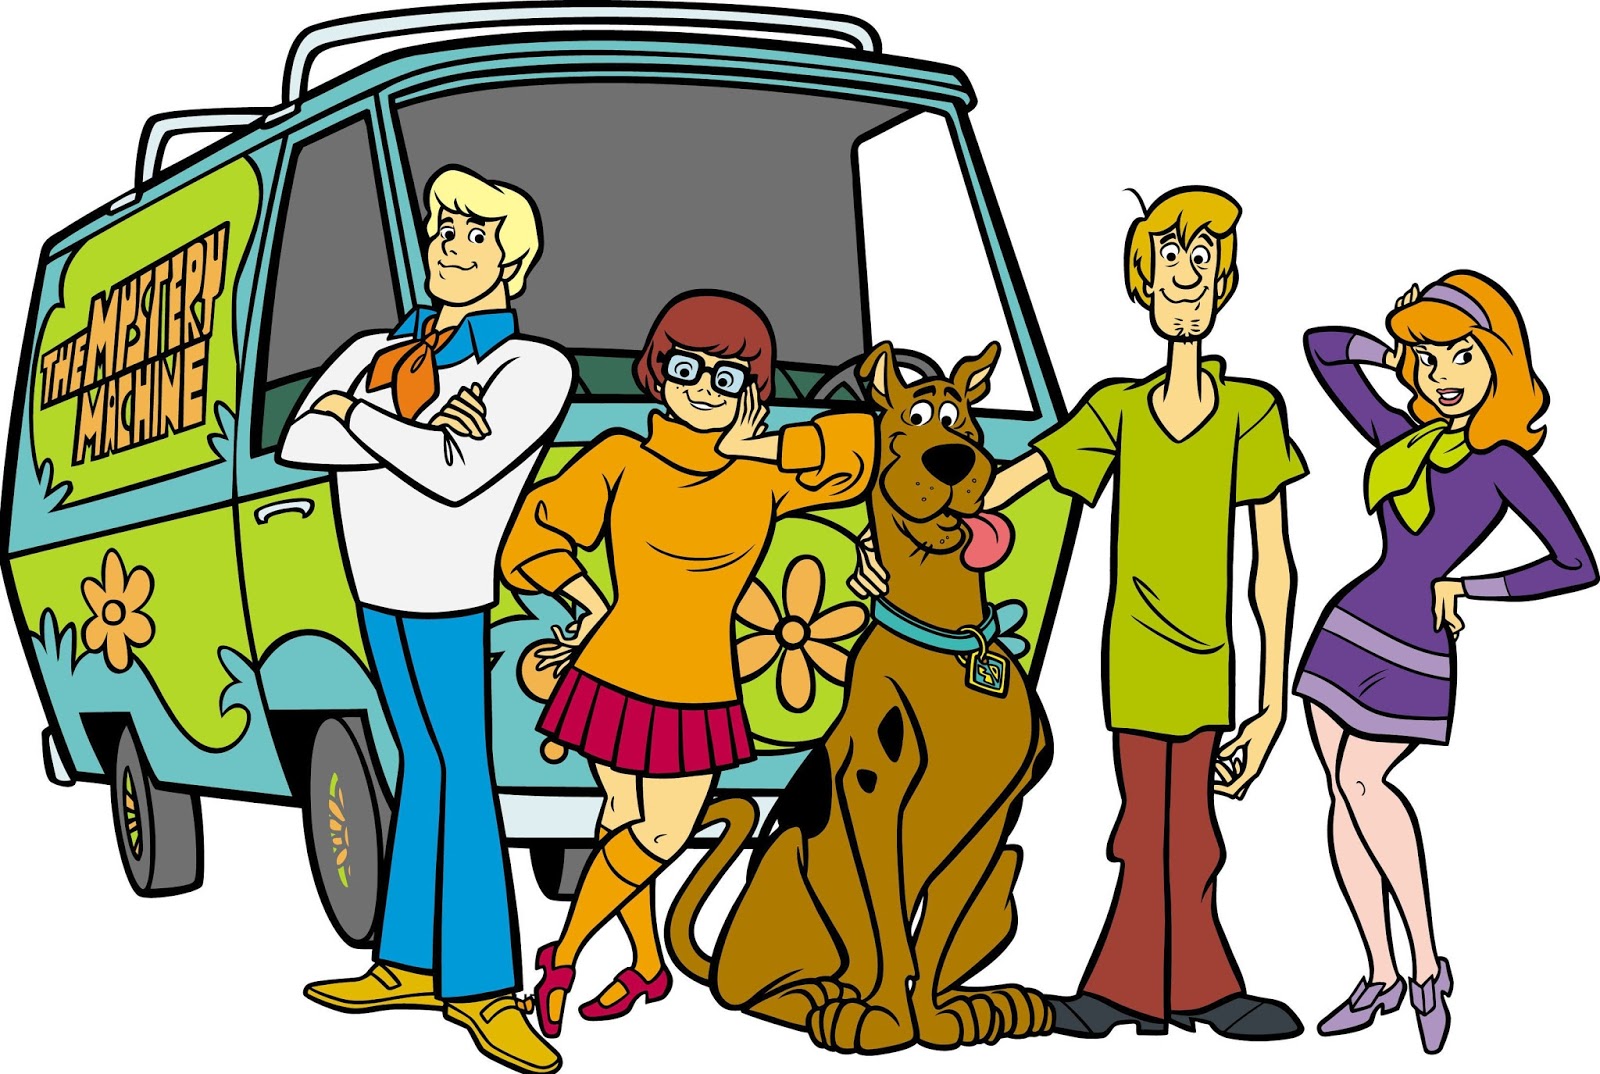 Desenho e Ilustração Personagem: Velma Dinkley (Scooby Doo